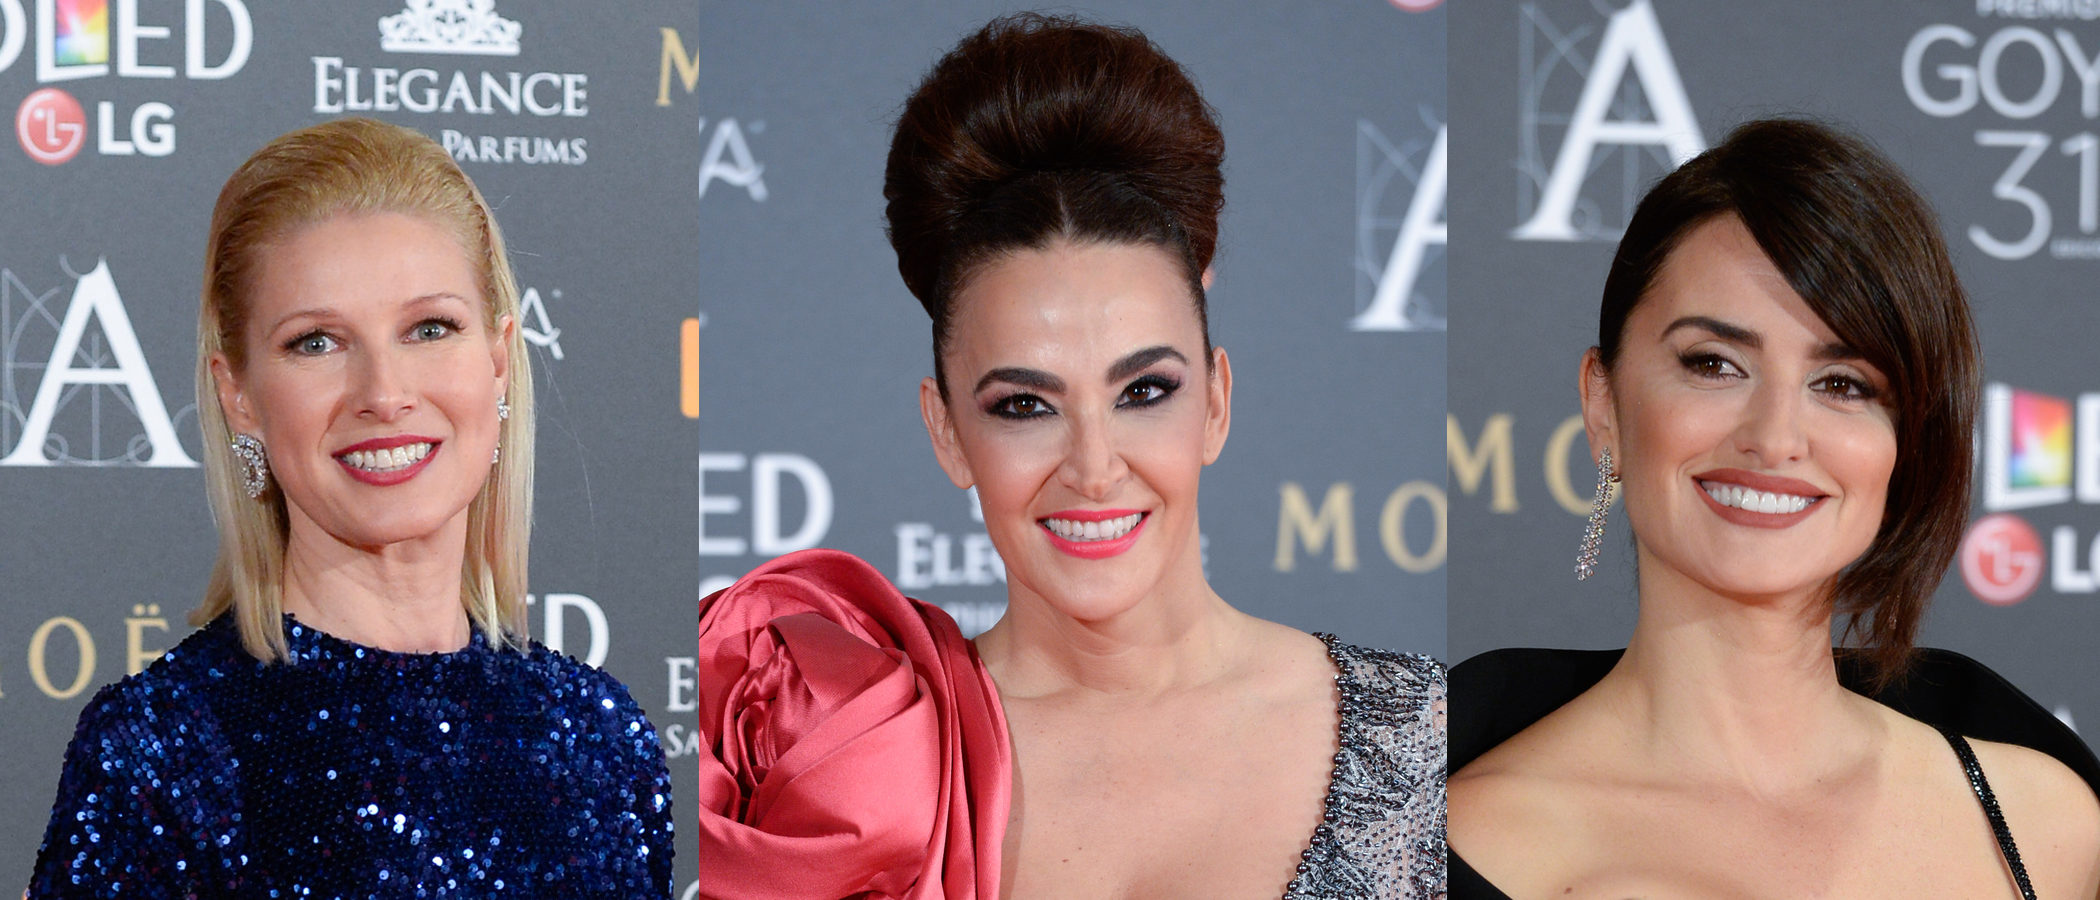 Anne Igartiburu, Cristina Rodríguez y Penélope Cruz entre los peores beauty looks de los premios Goya 2017